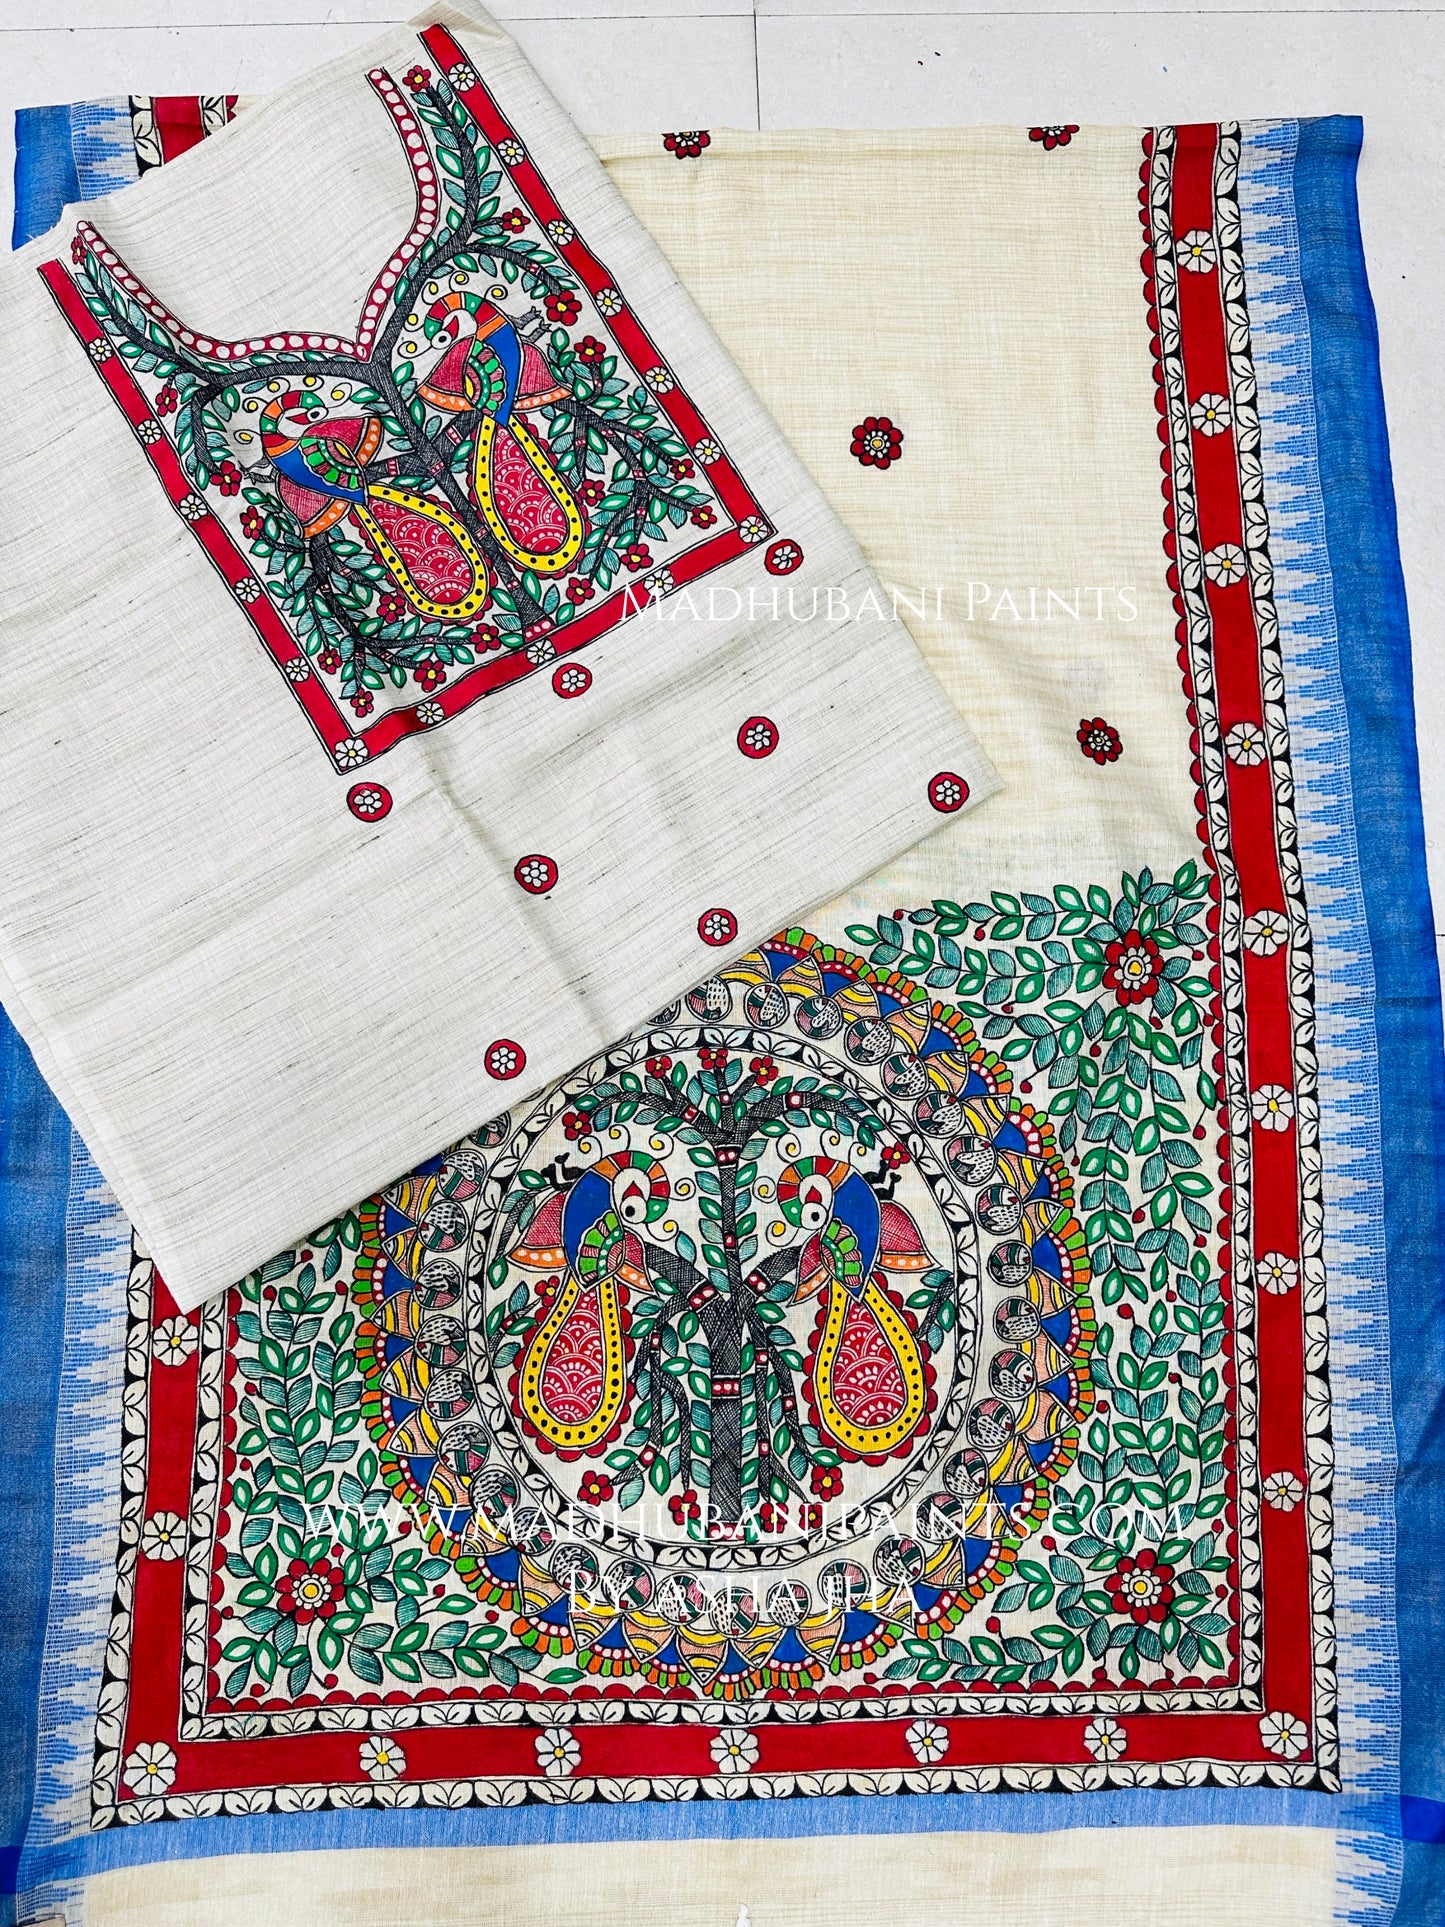 Judwa Mayuri Hand-painted Madhubani Painting Cotton Unstitched Kurta Pant Dupatta Set